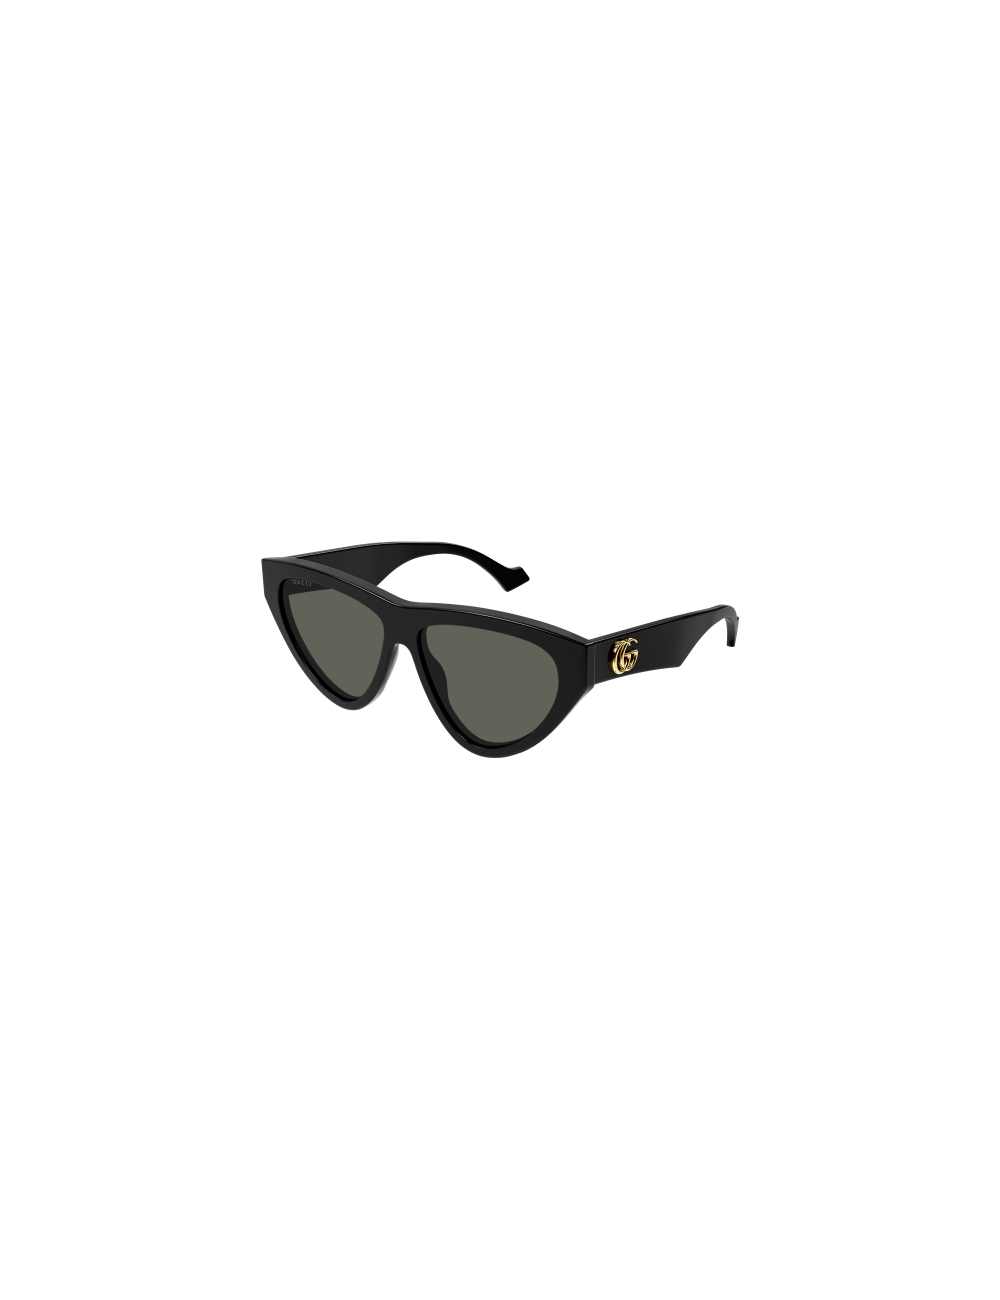 Gucci GG1333S sunglasses otticamauro.biz